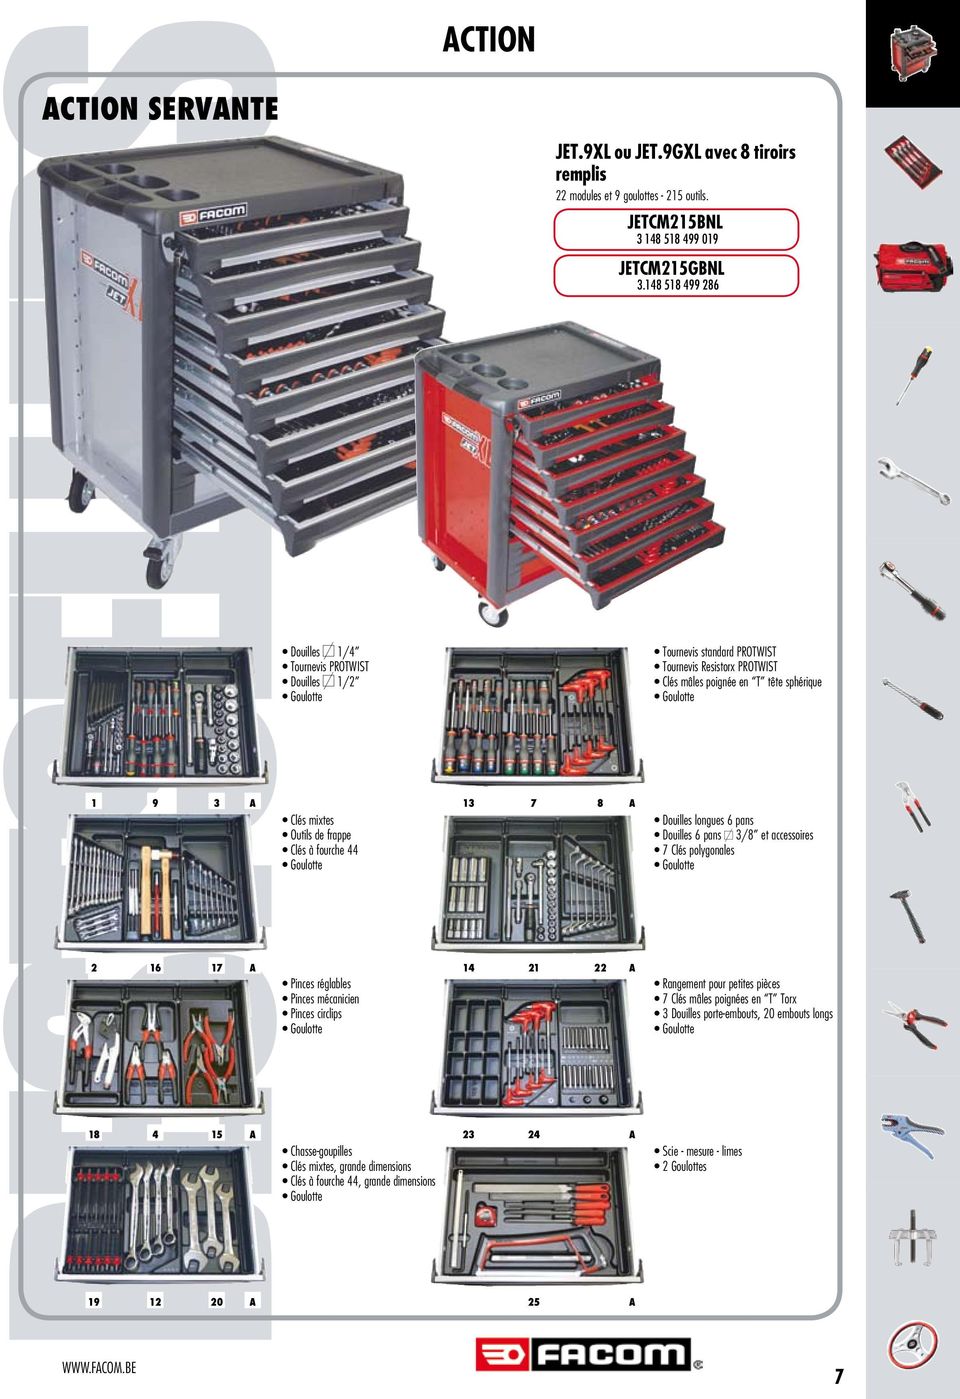 9GXL avec 8 tiroirs remplis 22 modules et 9 goulottes - 215 outils. 8 22 JETCM215BNL 3 148 518 499 019 JETCM215GBNL 3.